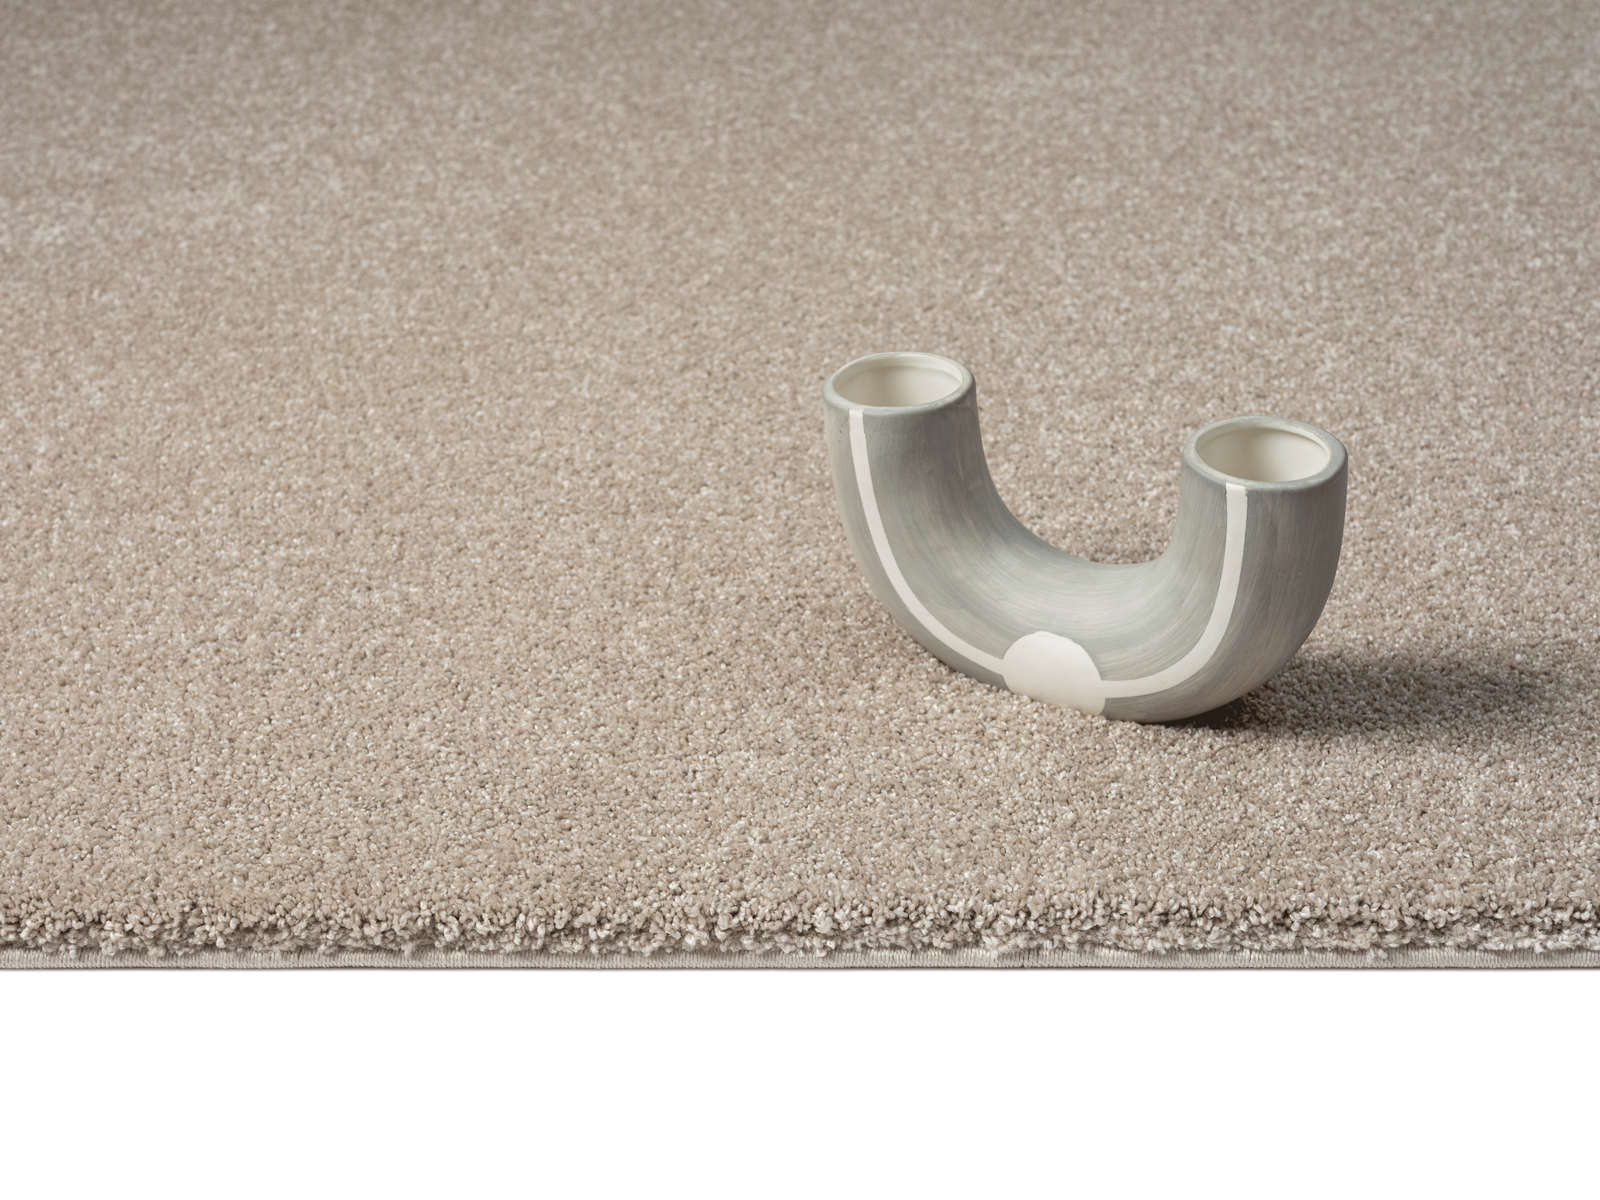             Zacht kortpolig tapijt in beige - 200 x 140 cm
        